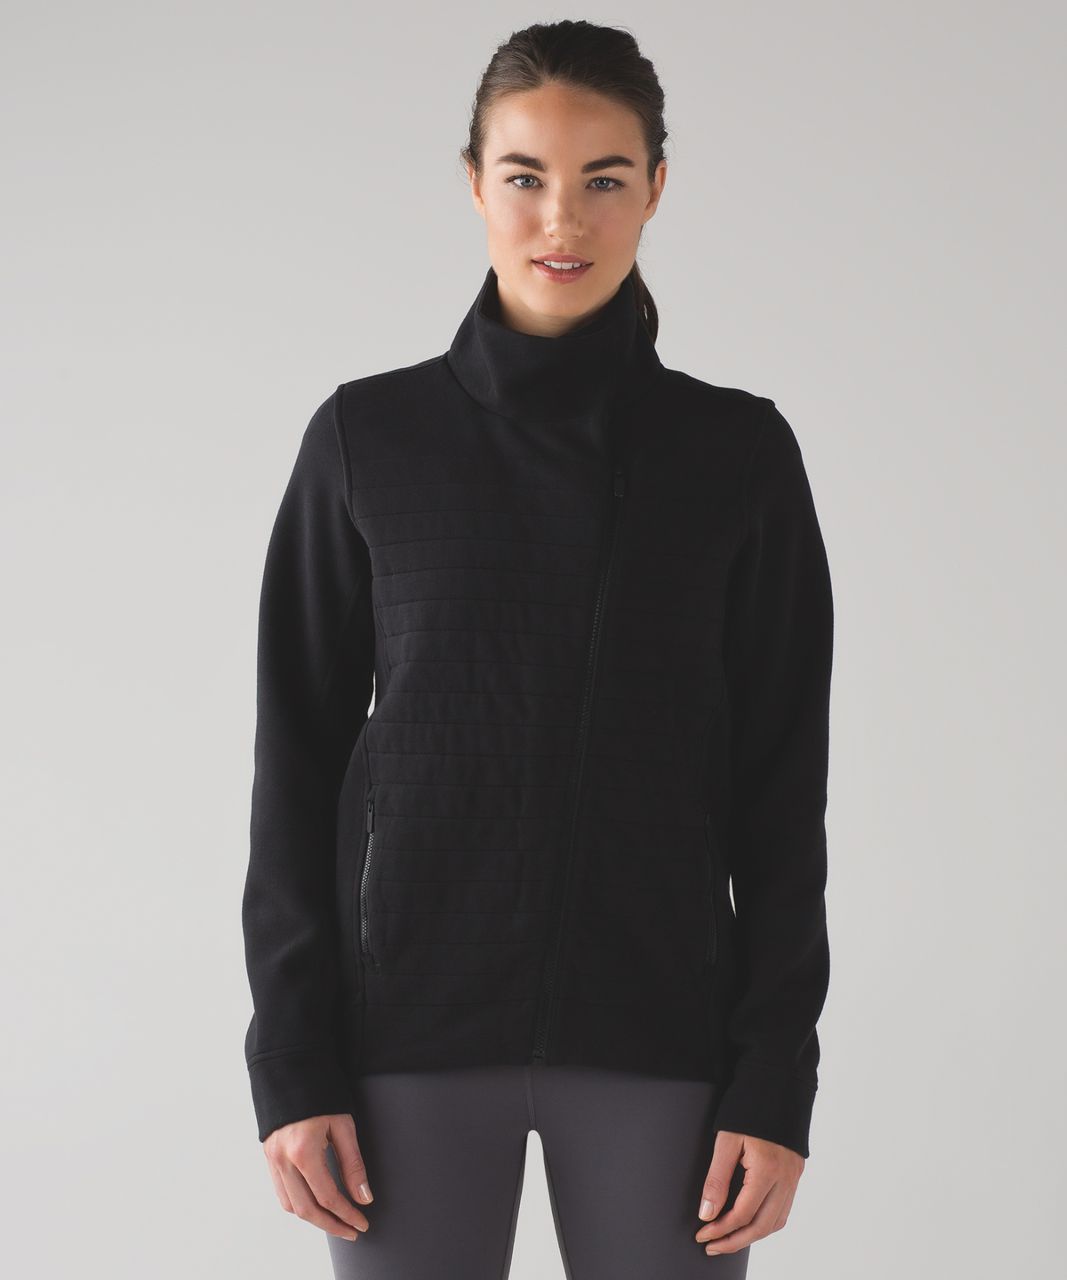 Lululemon Black Fleece Be True Crew Size 6 Quilted Sweatshirt